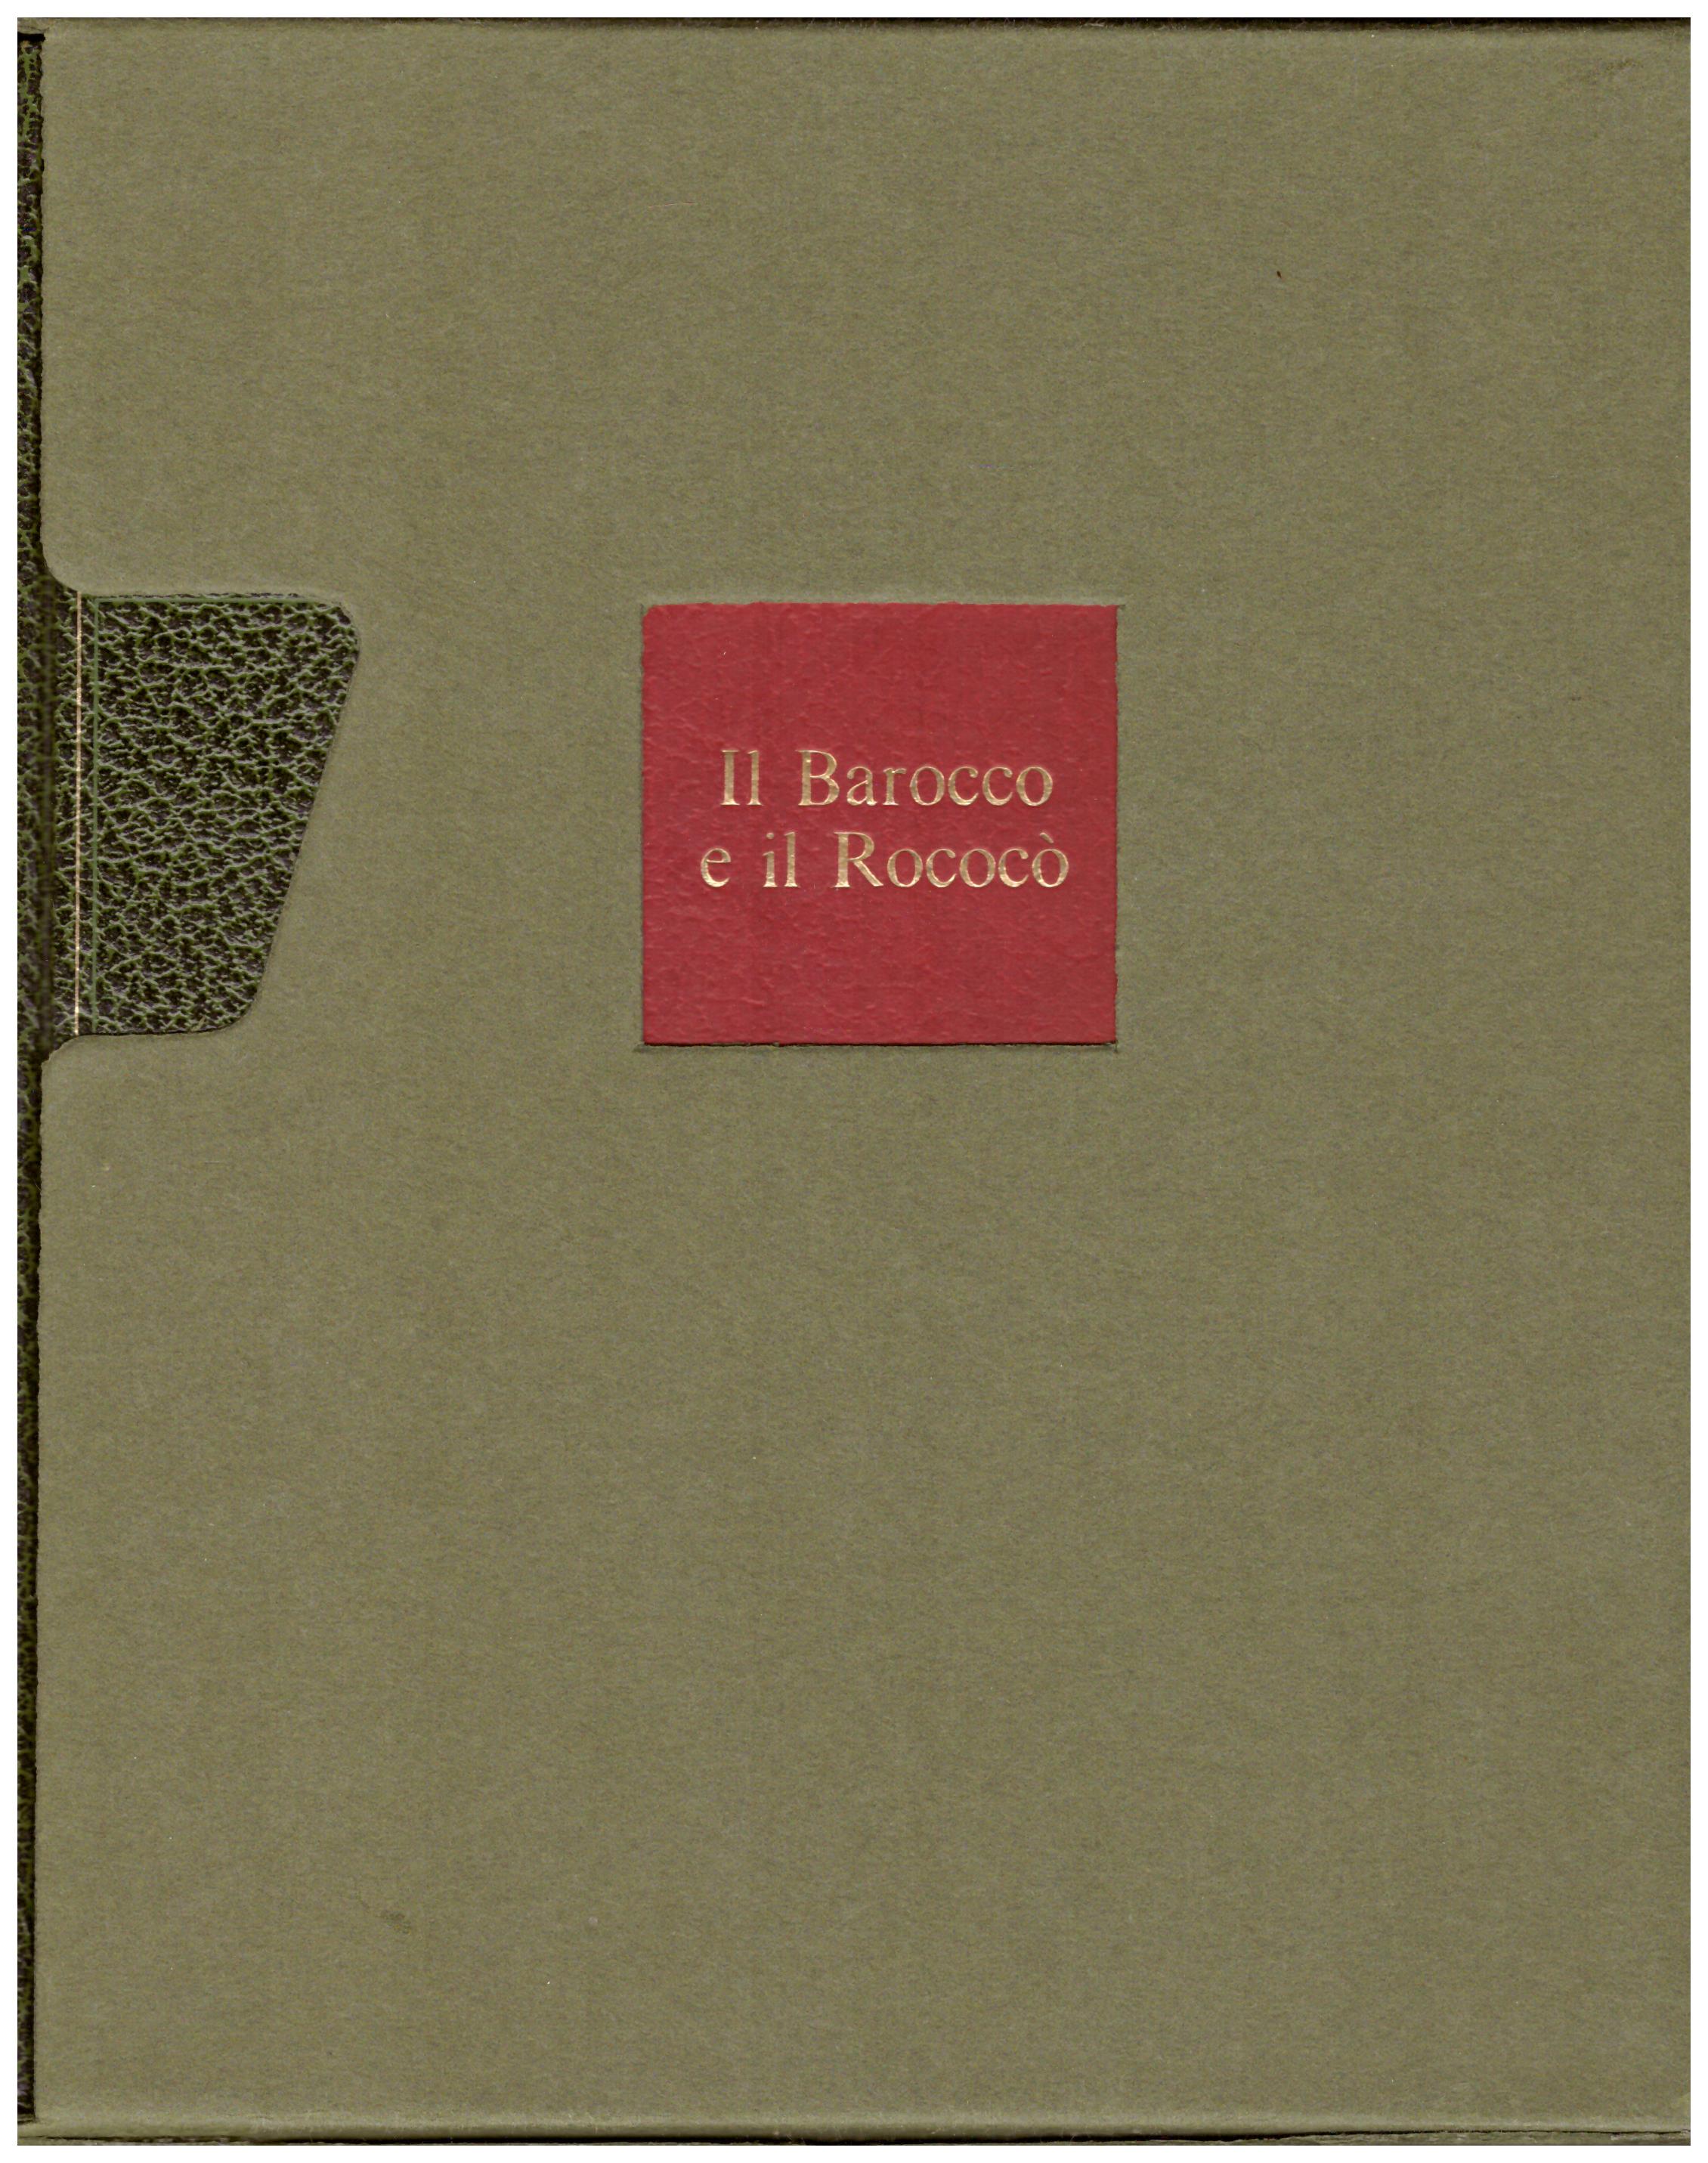 Titolo: L'arte nel mondo n.15, Il Barocco e il Rococcò Autore: Liselotte Andersen Editore: Rizzoli, 1970